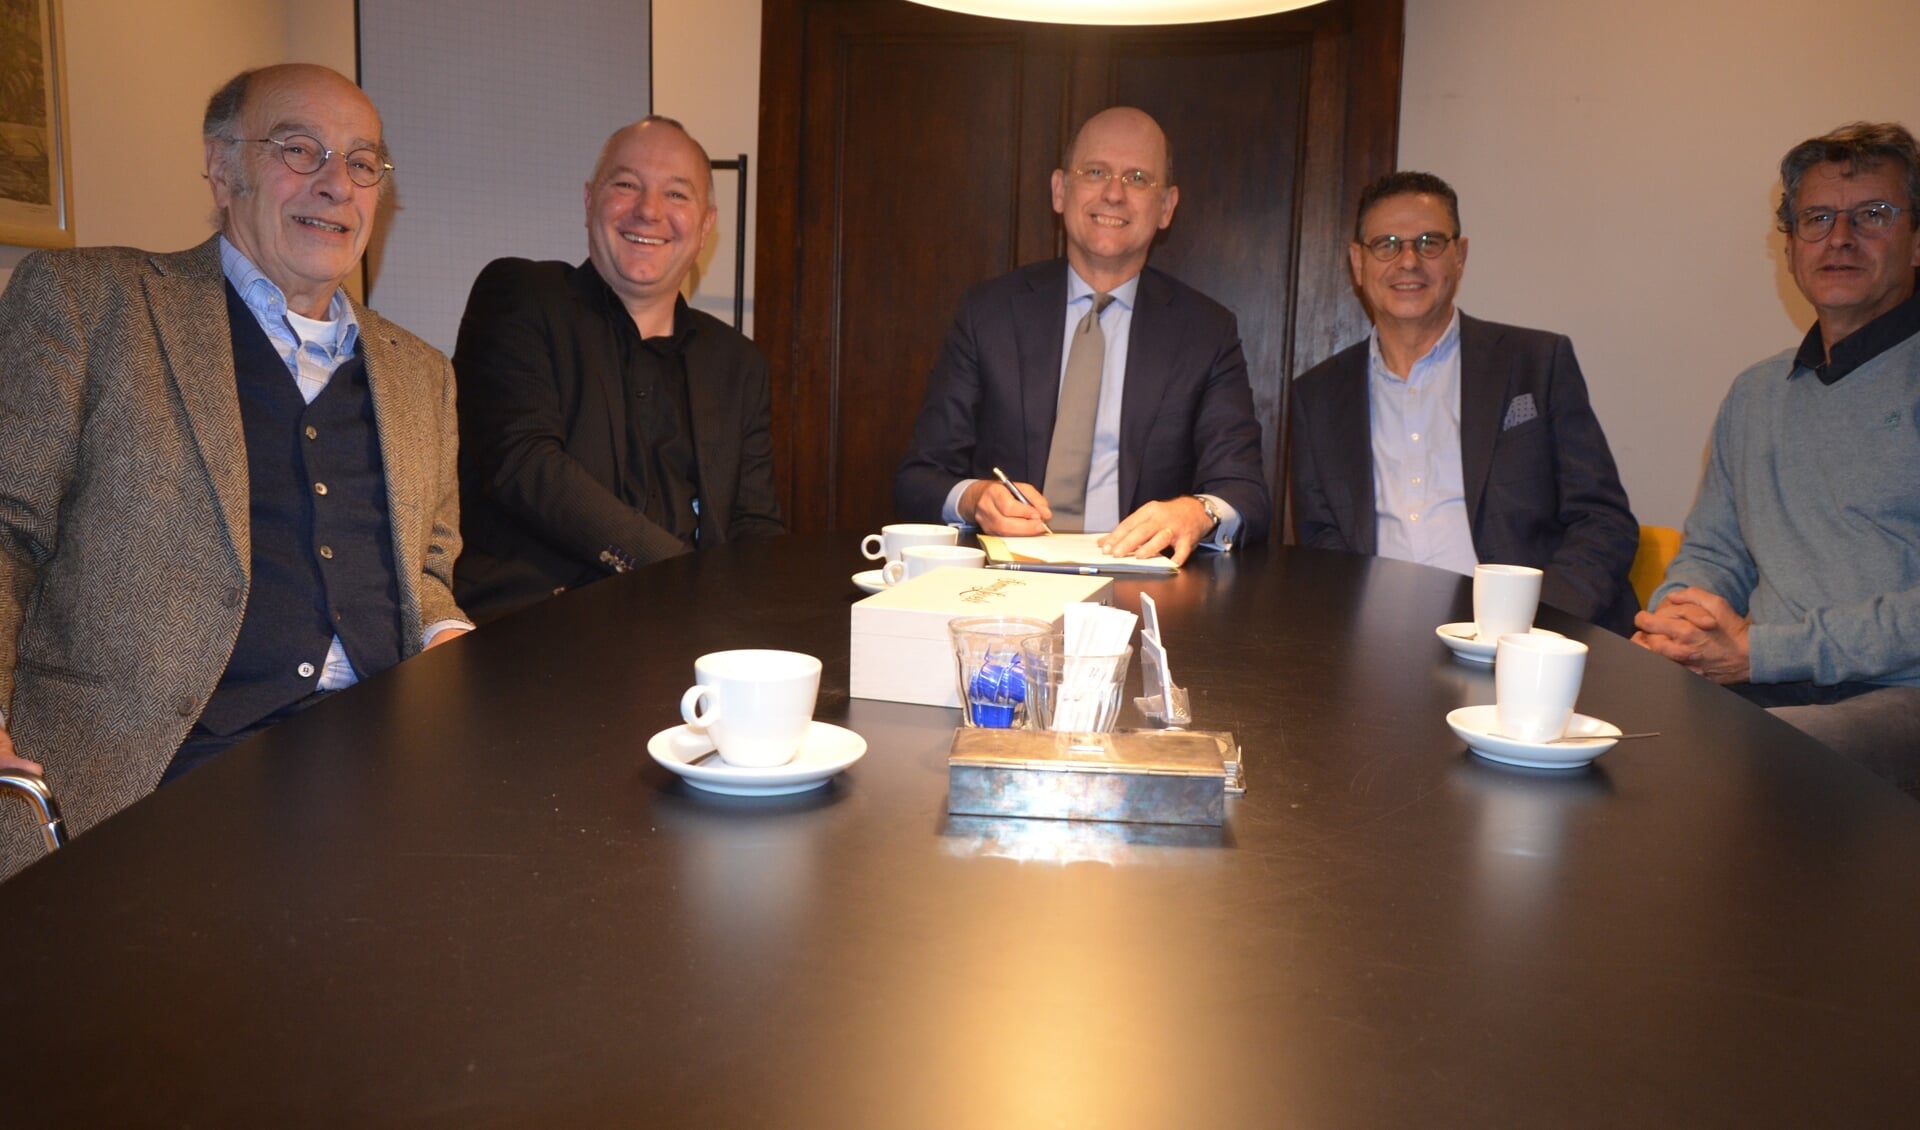 V.l.n.r.: Rob van de Weerd, Bart van Asperdt, notaris Mark Sprenkels, Ed Speijer en schooldirecteur Jan Heijman